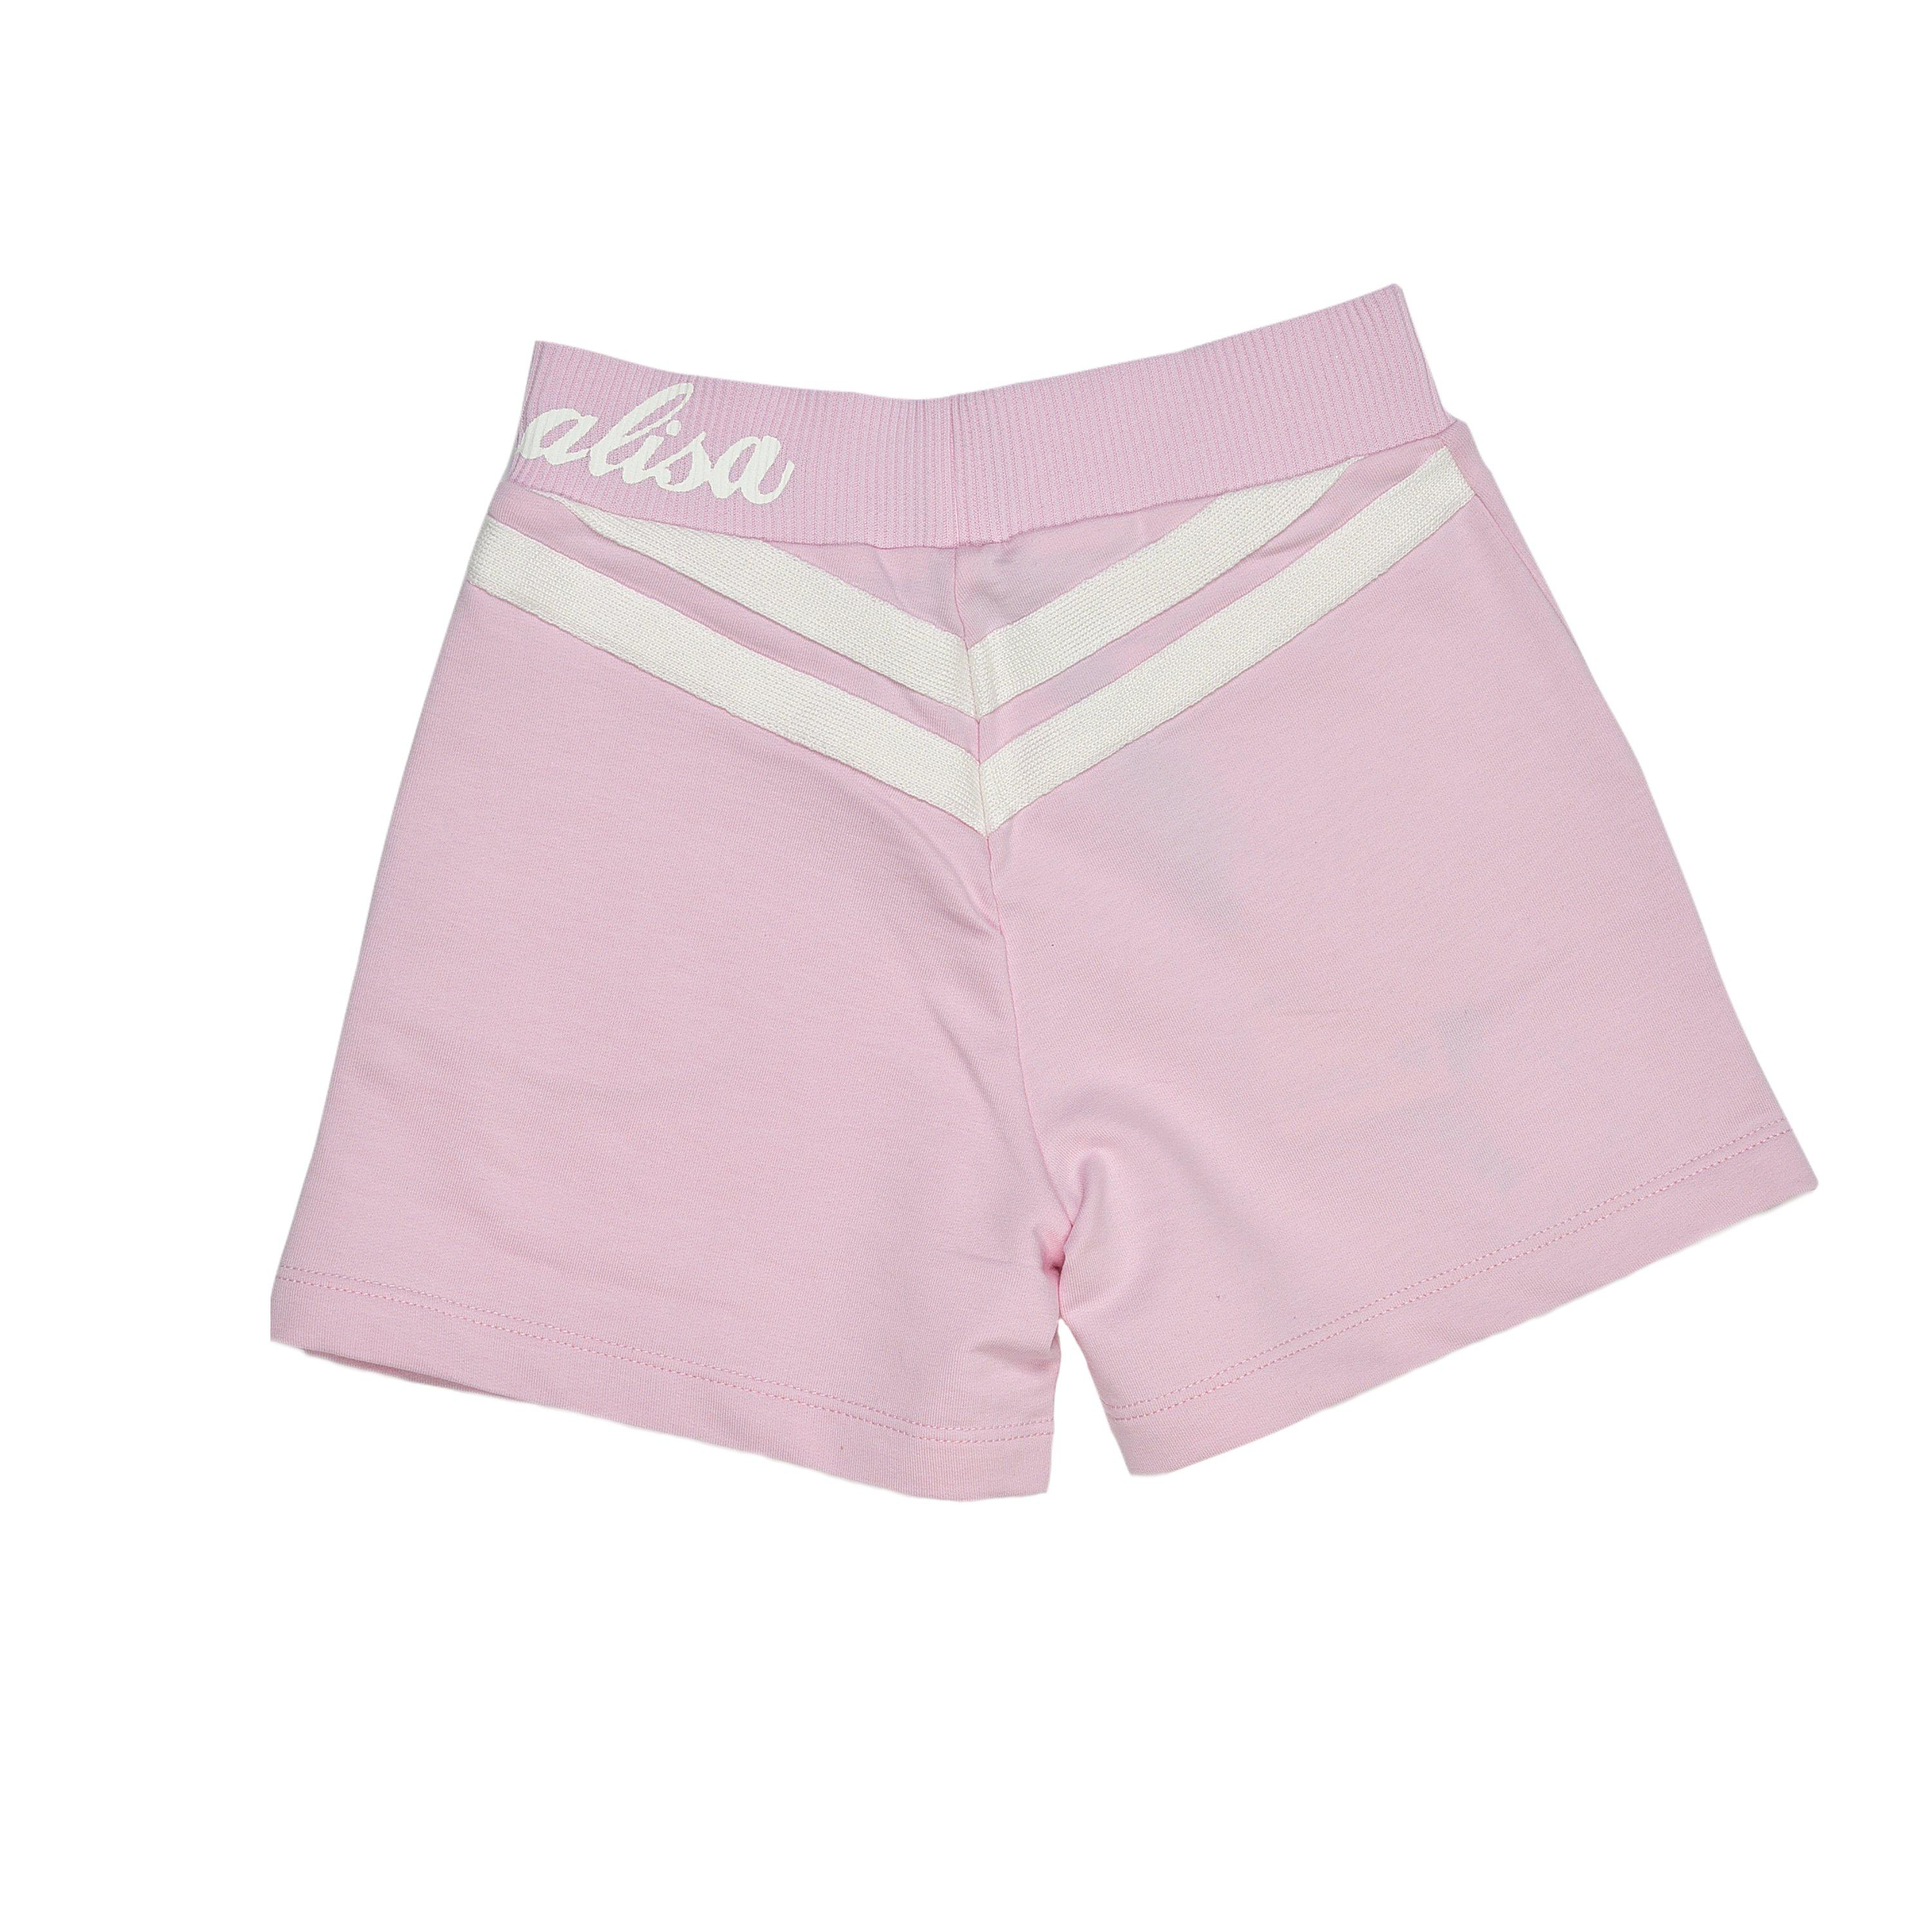 Monnalisa Girls Pink Shorts